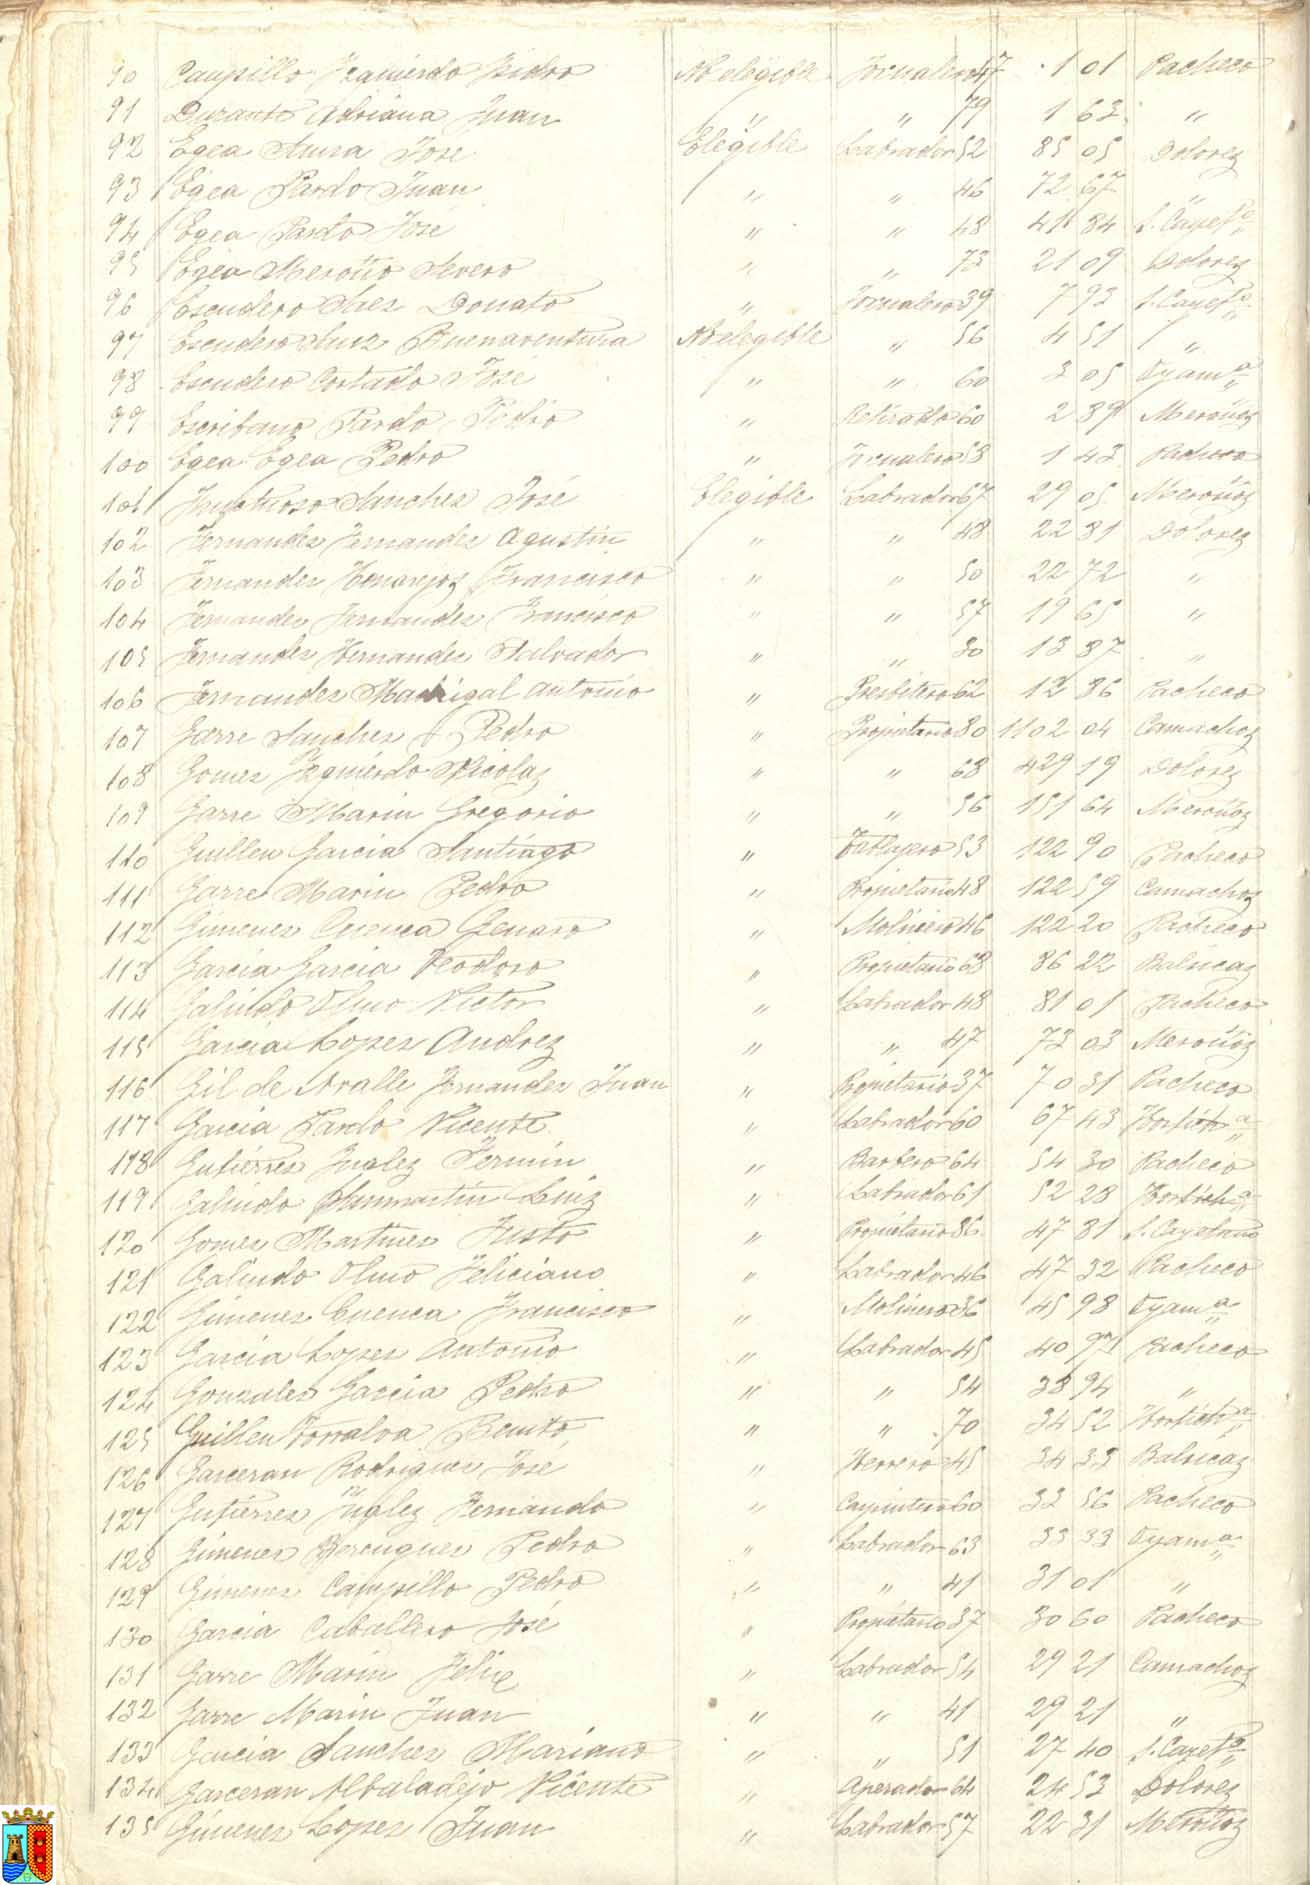 Actas de sesiones del pleno del Ayuntamiento de Torre Pacheco. Año 1890